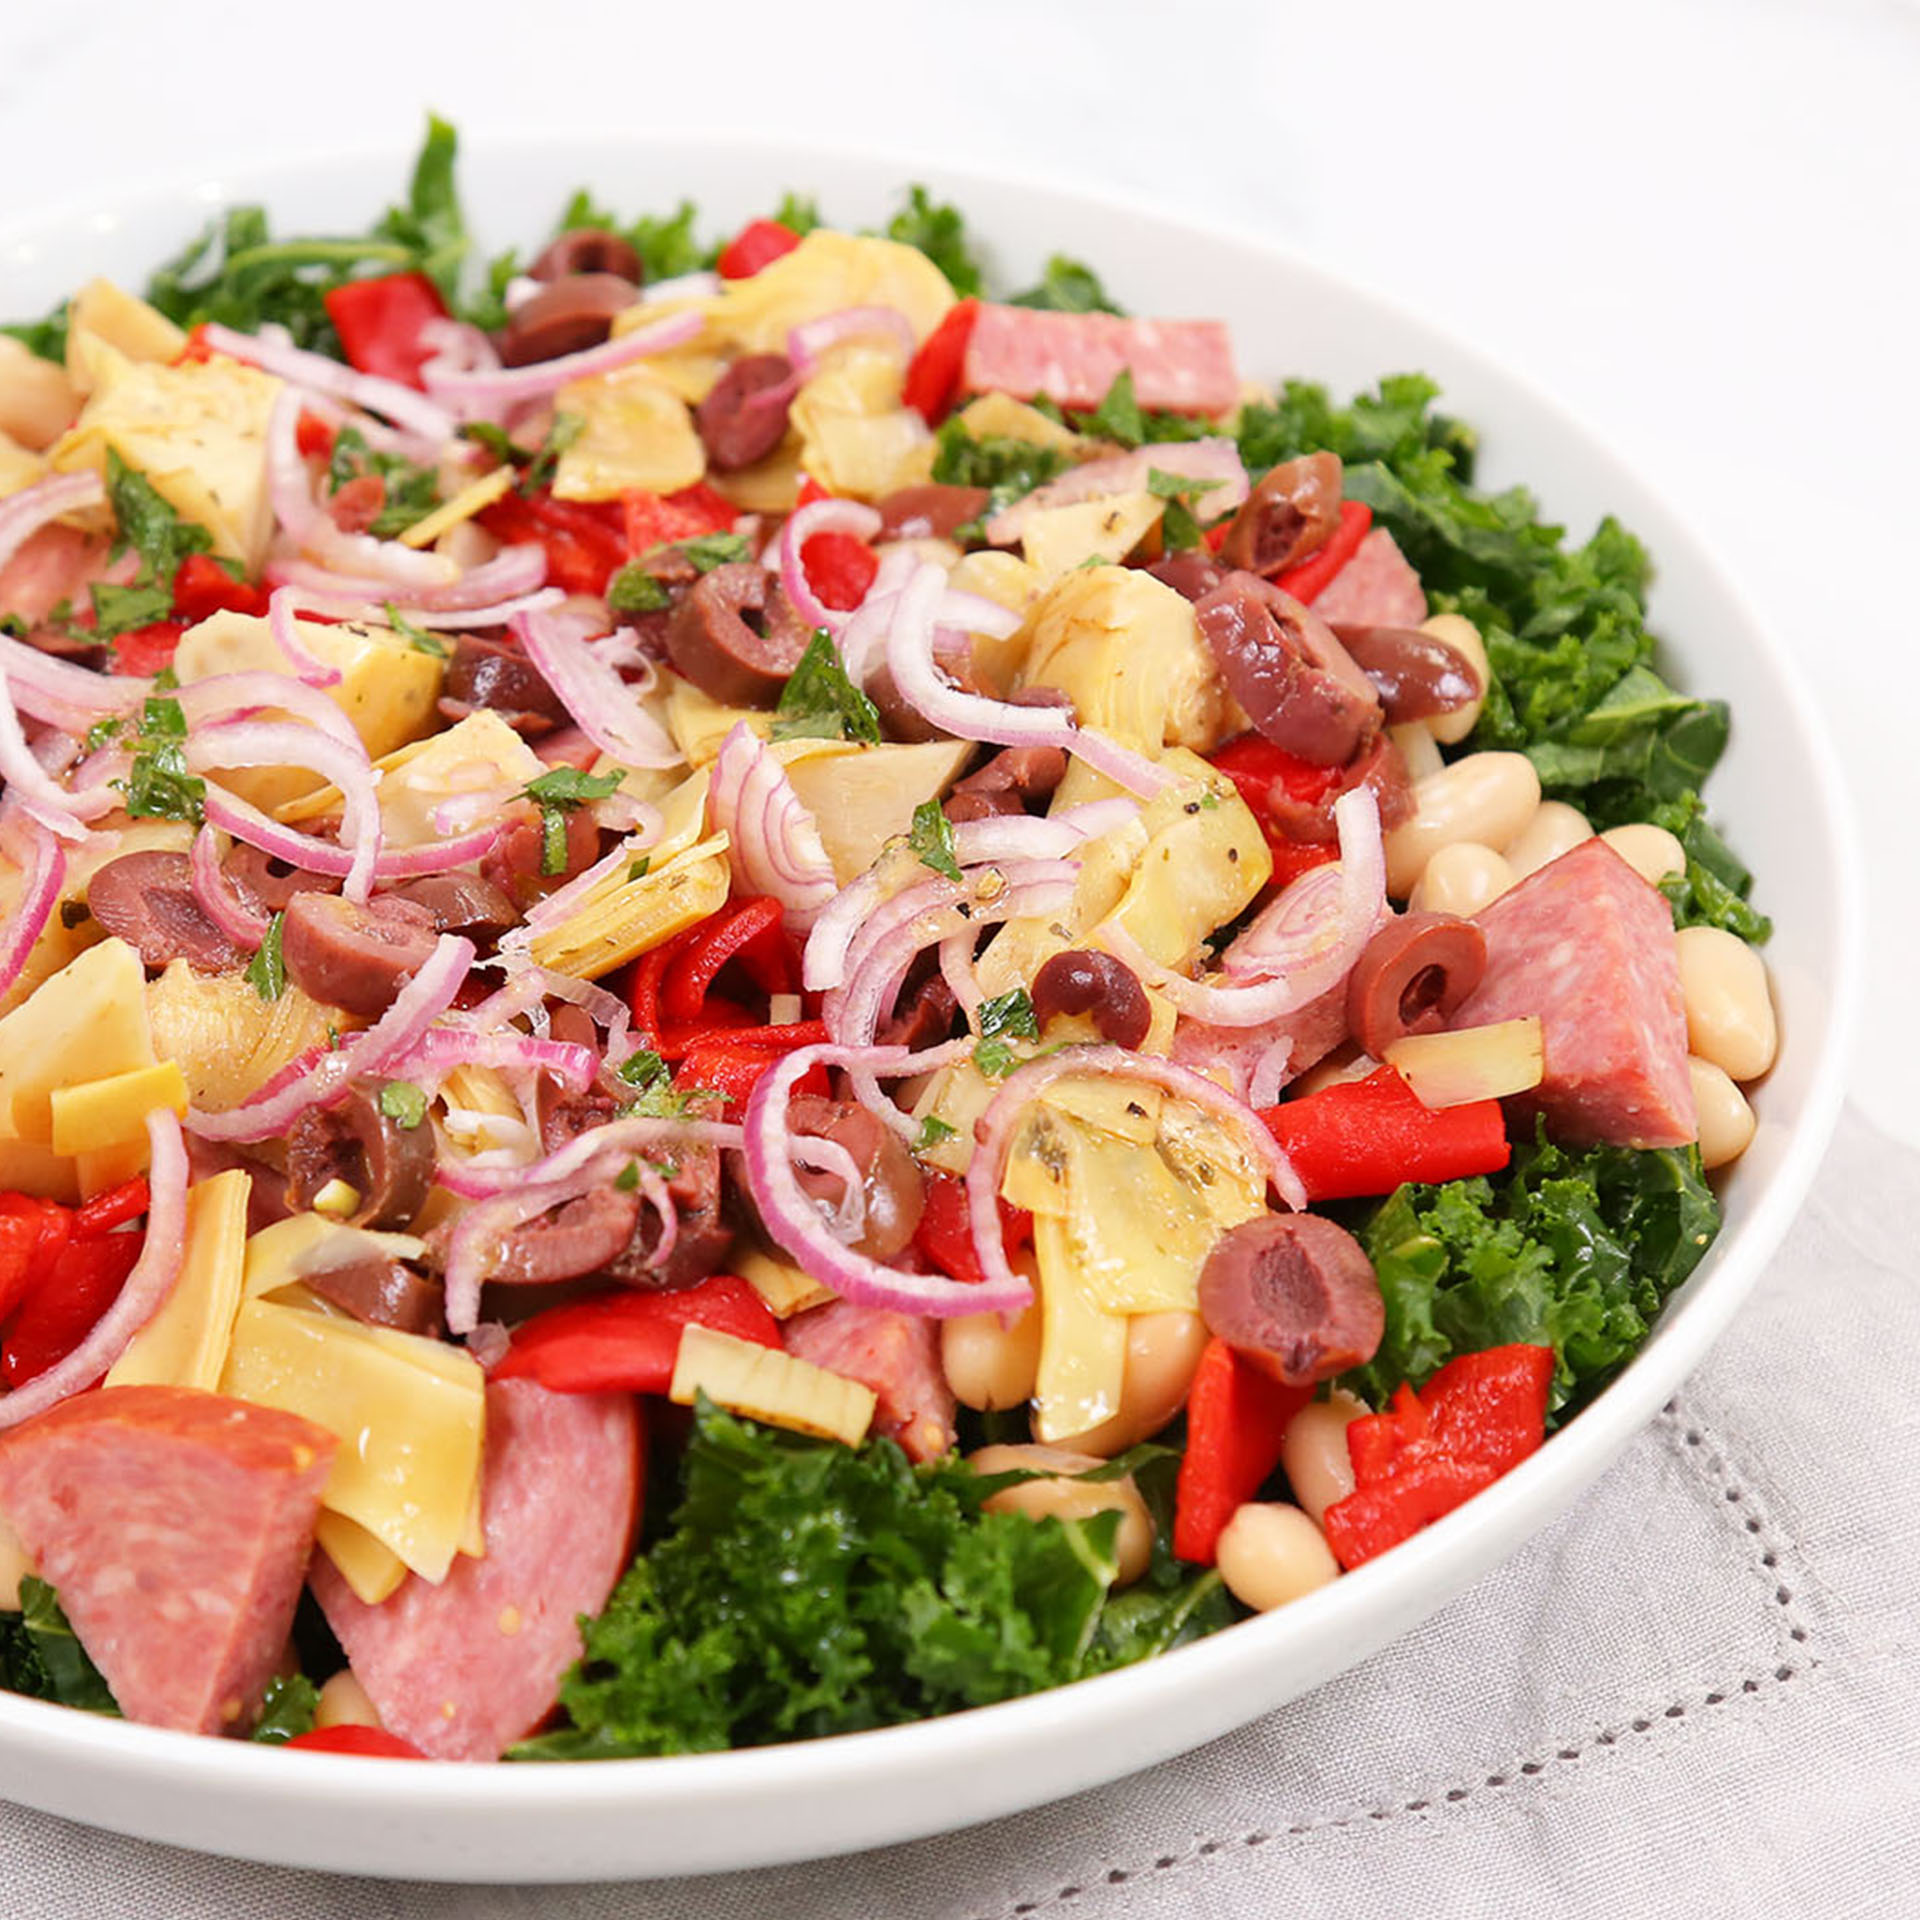 Tuscan Kale & White Bean Salad